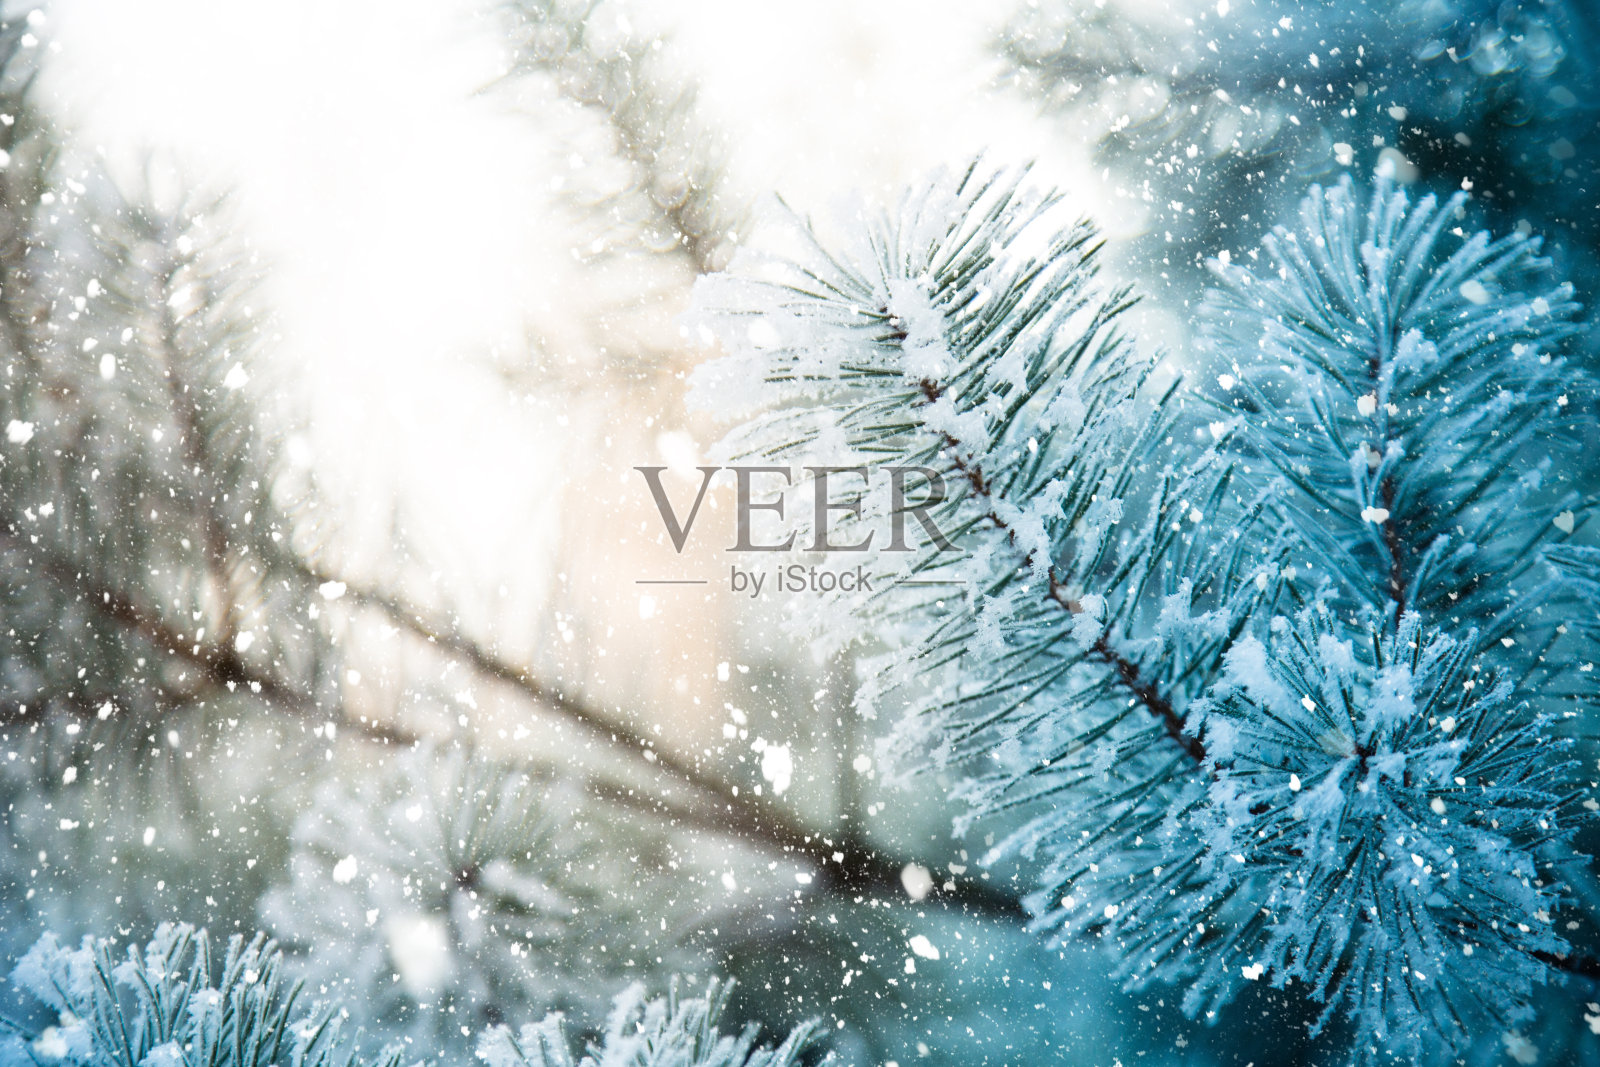 冬天的景象-结霜的松枝。树林里的冬天照片摄影图片